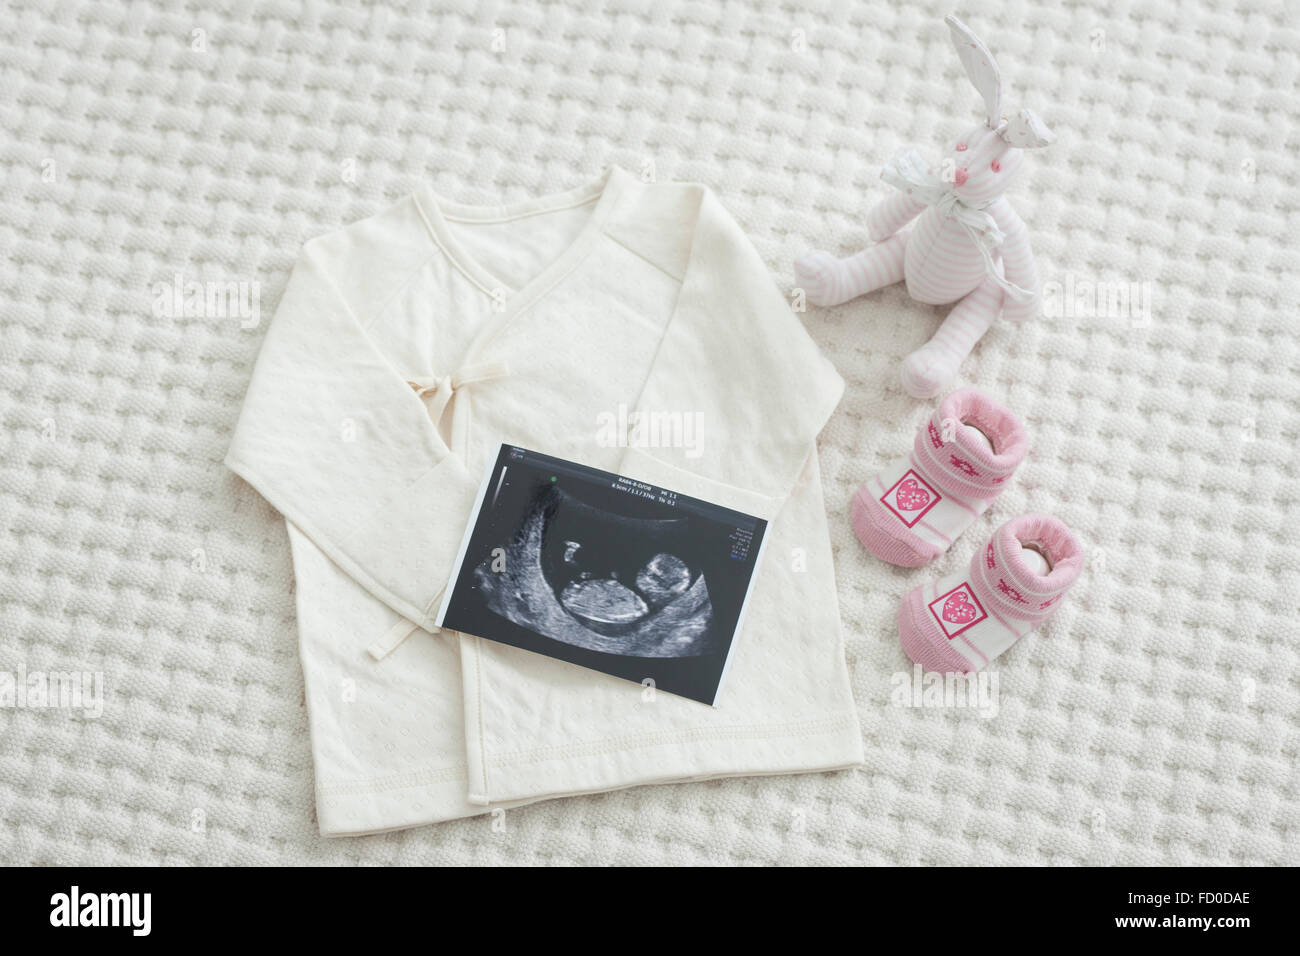 Elevato angolo di sonogram di un feto e articoli per neonati Foto Stock